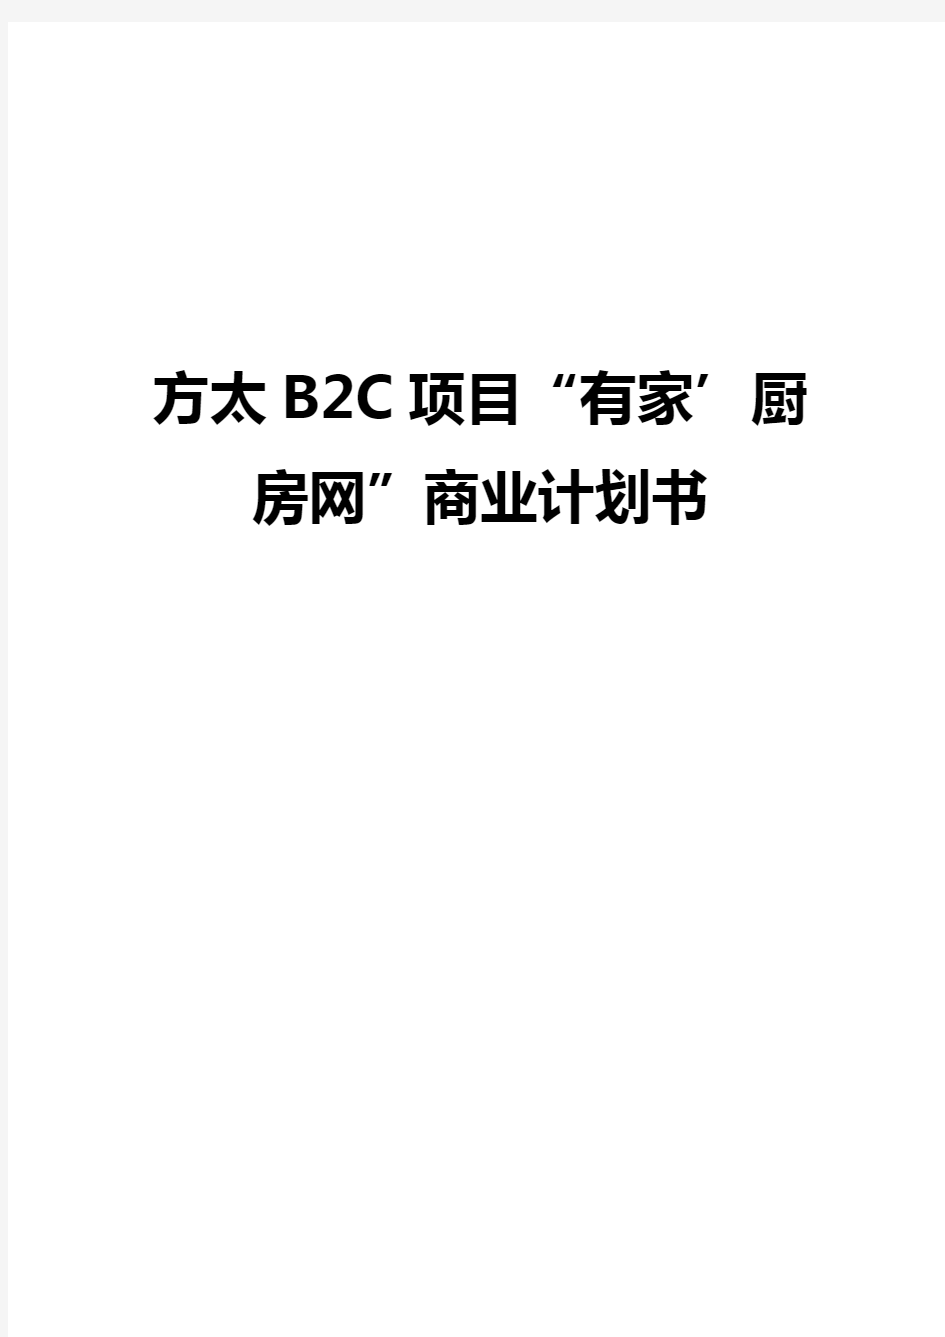 方太厨具B2C电子商务网络商城建设运营项目商业计划书【审定稿】